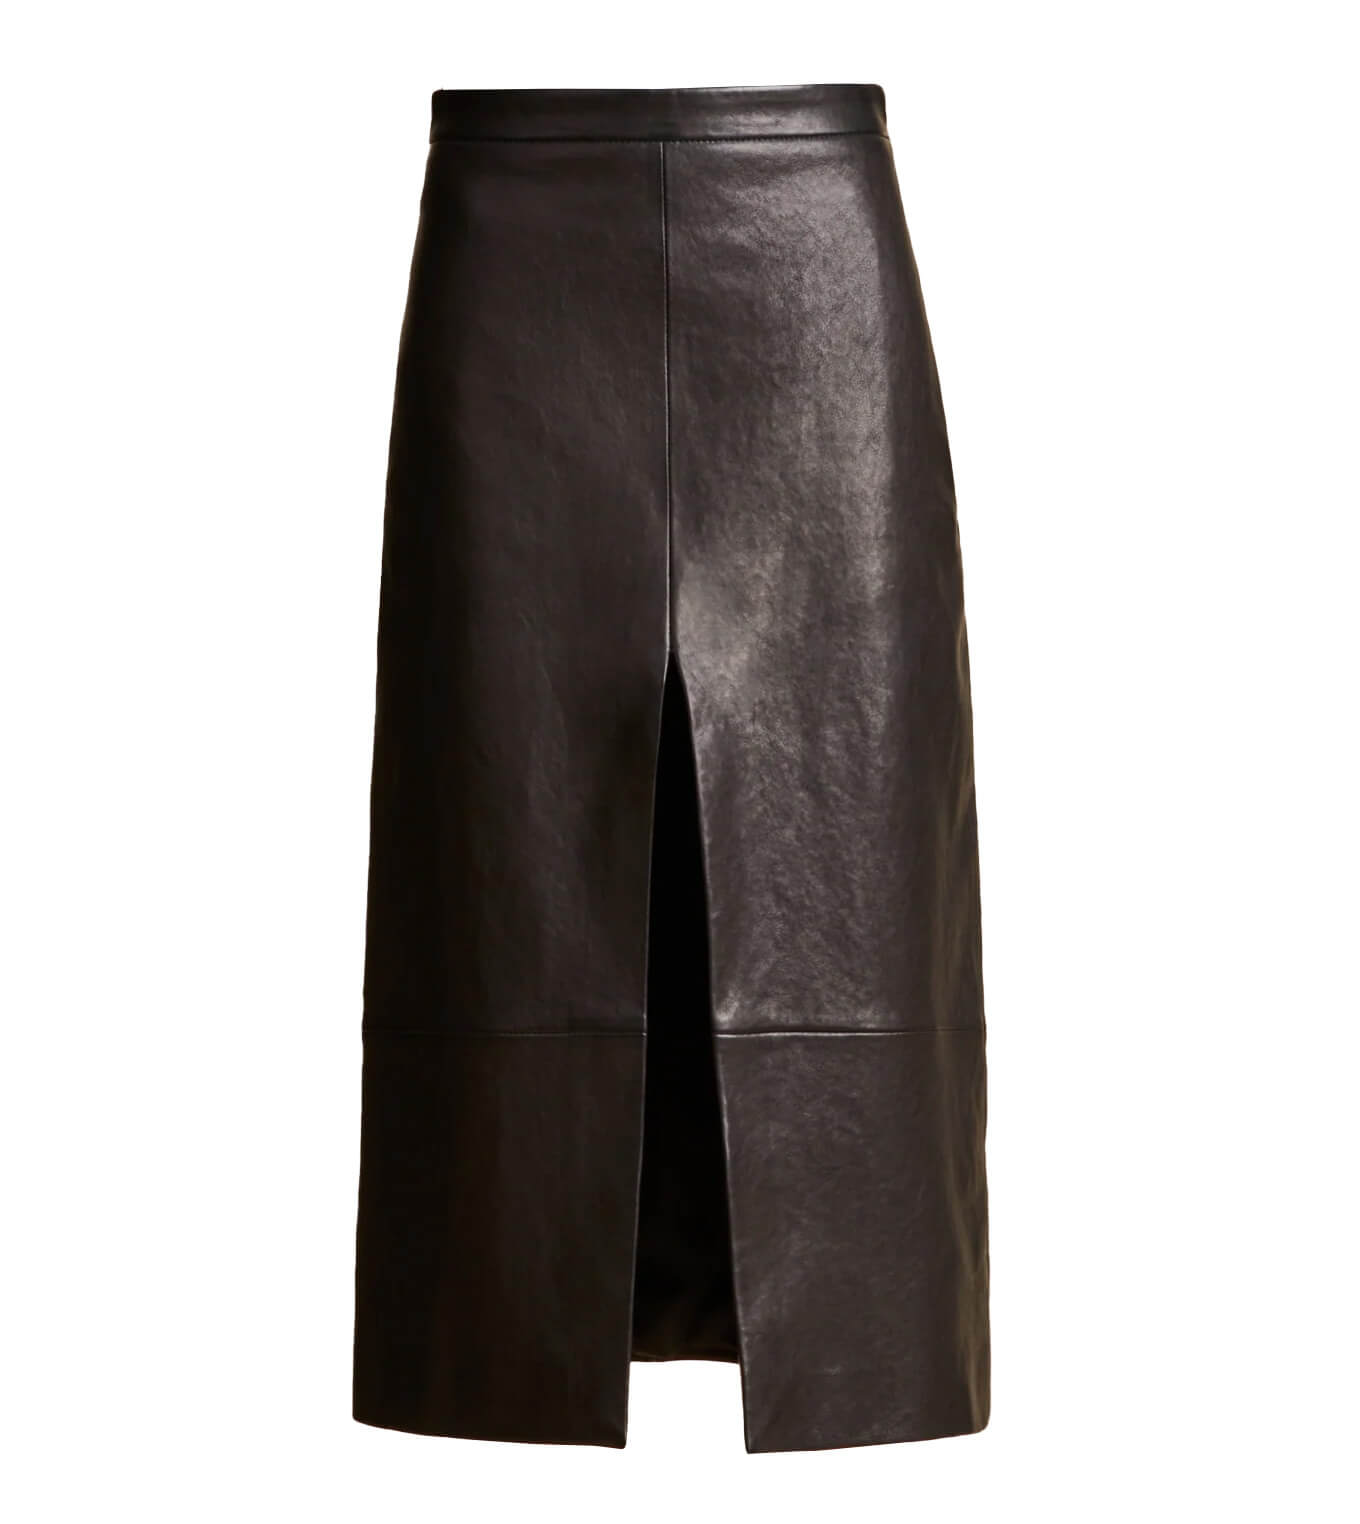 KHAITE Fraser Skirt Black 100% Lambskin Slit Skirt